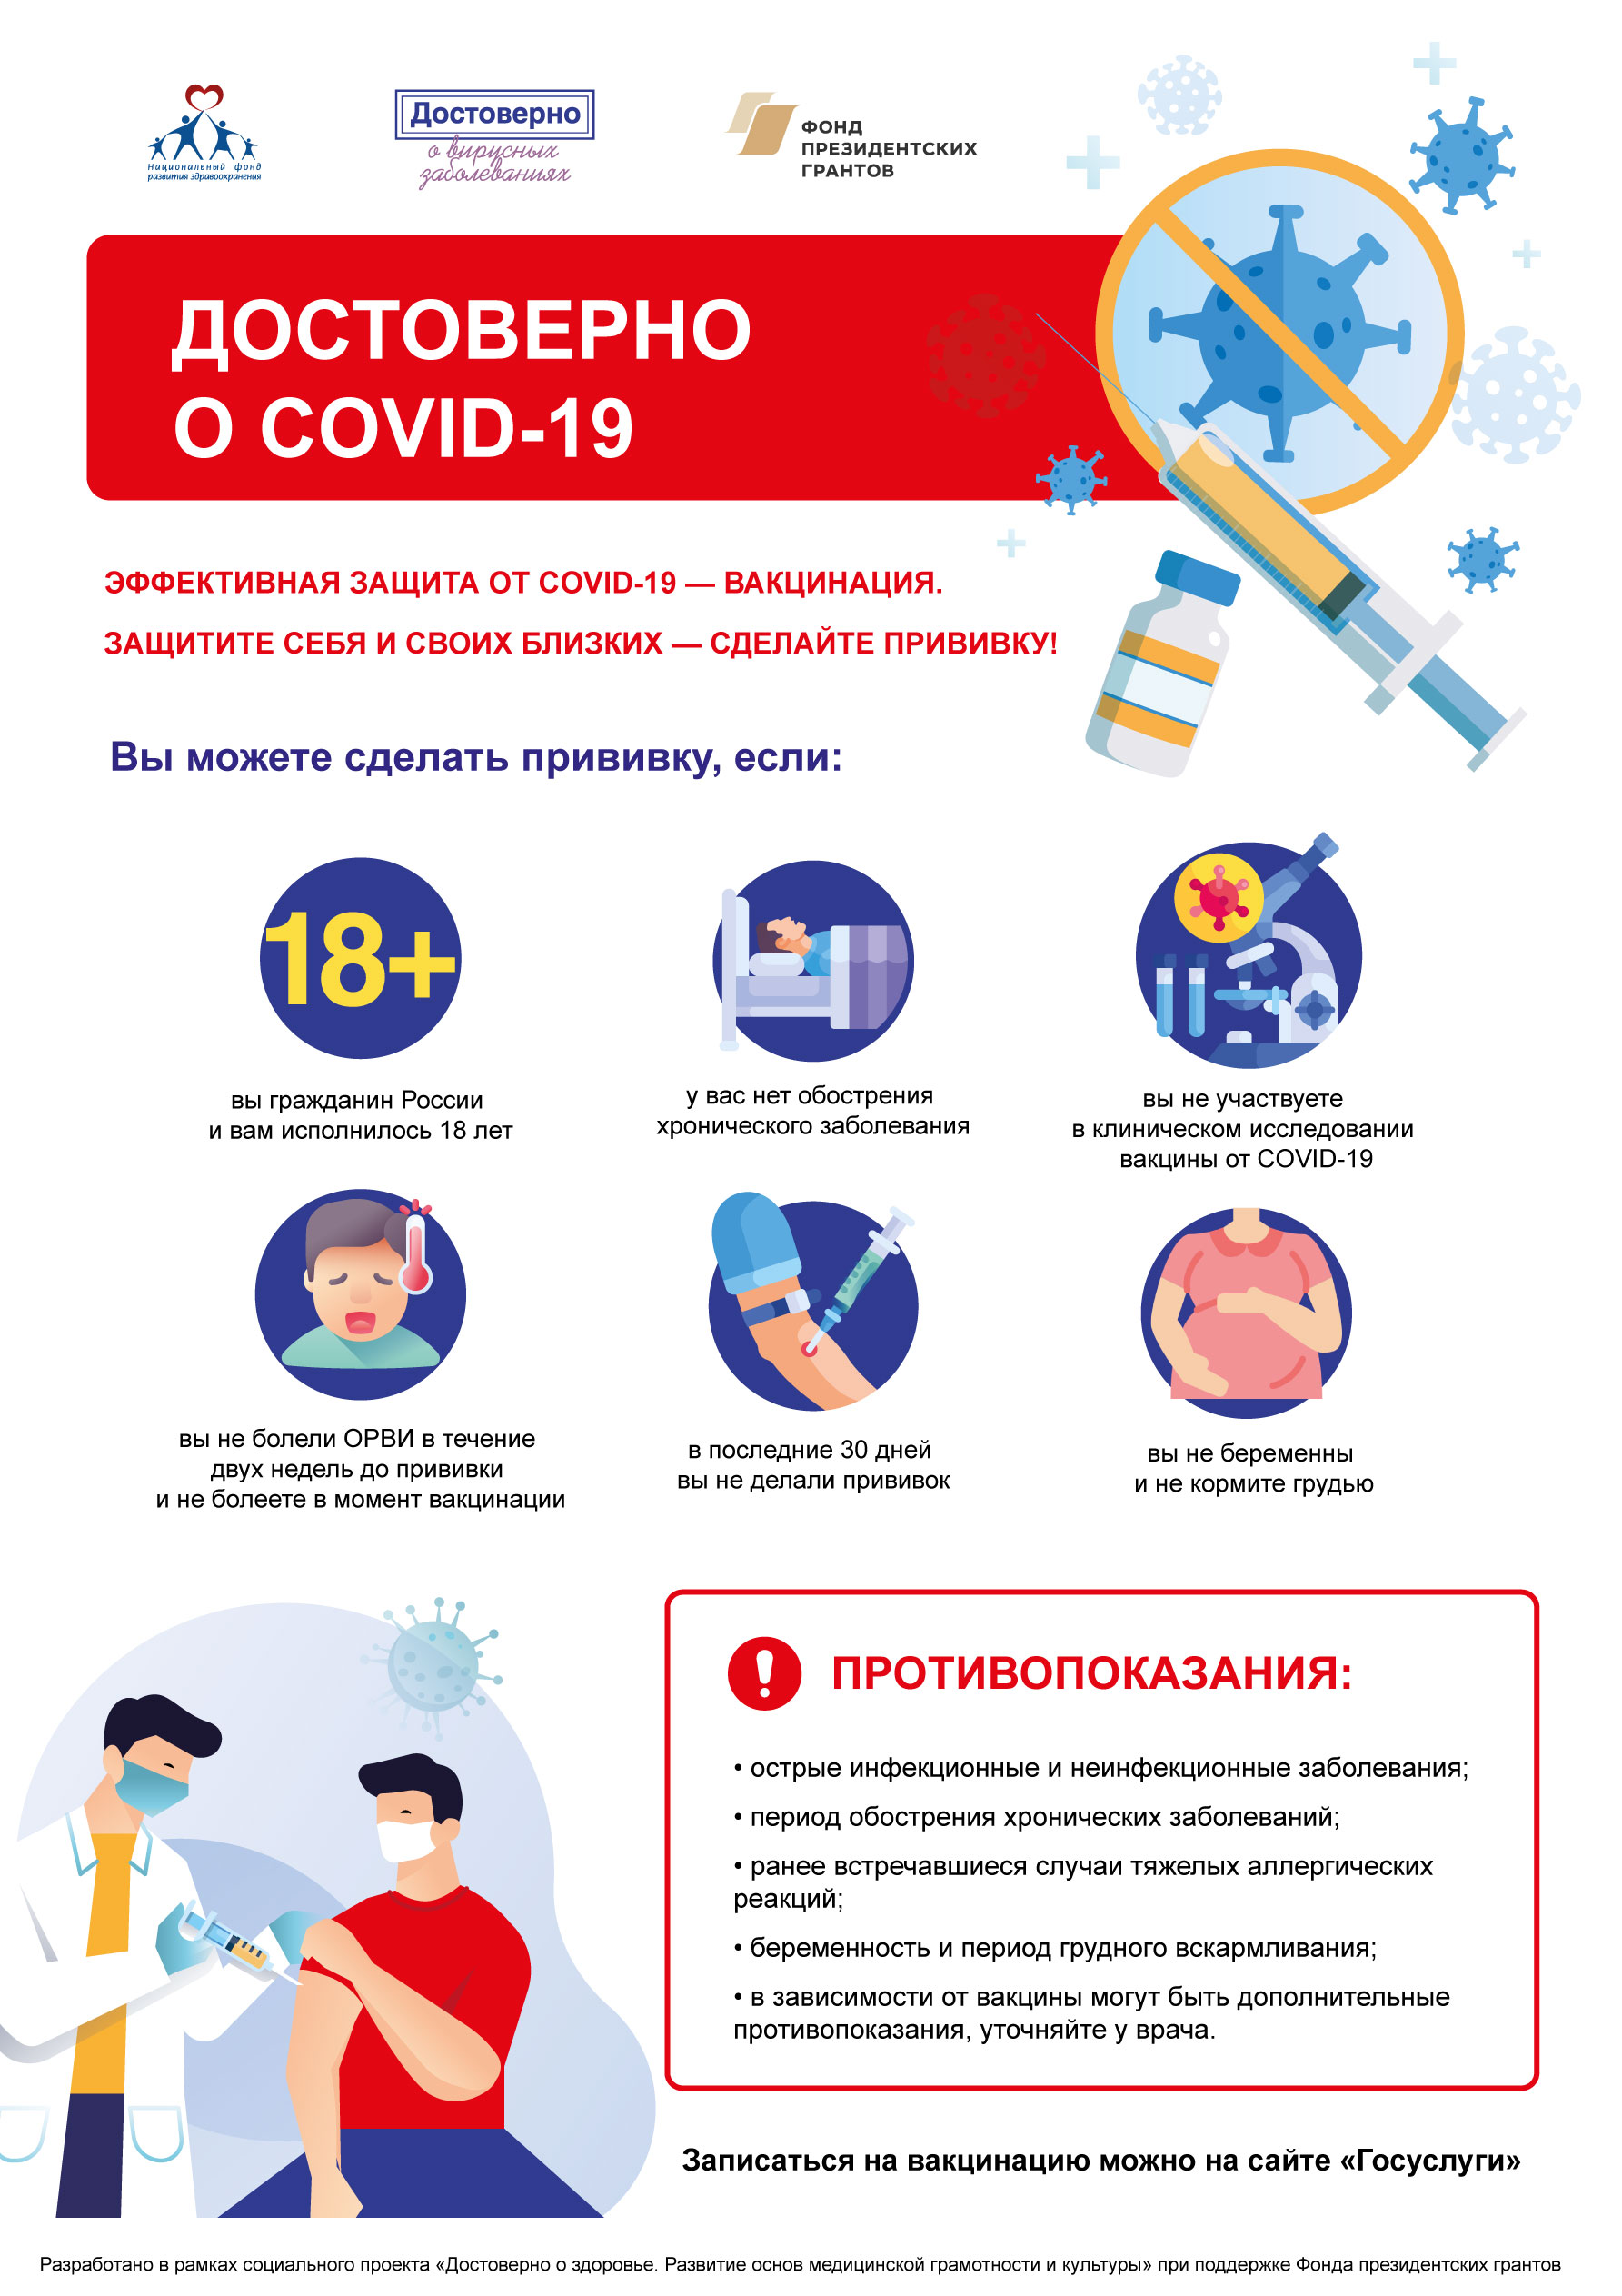 Показания и противопоказания к вакцинации от COVID-19